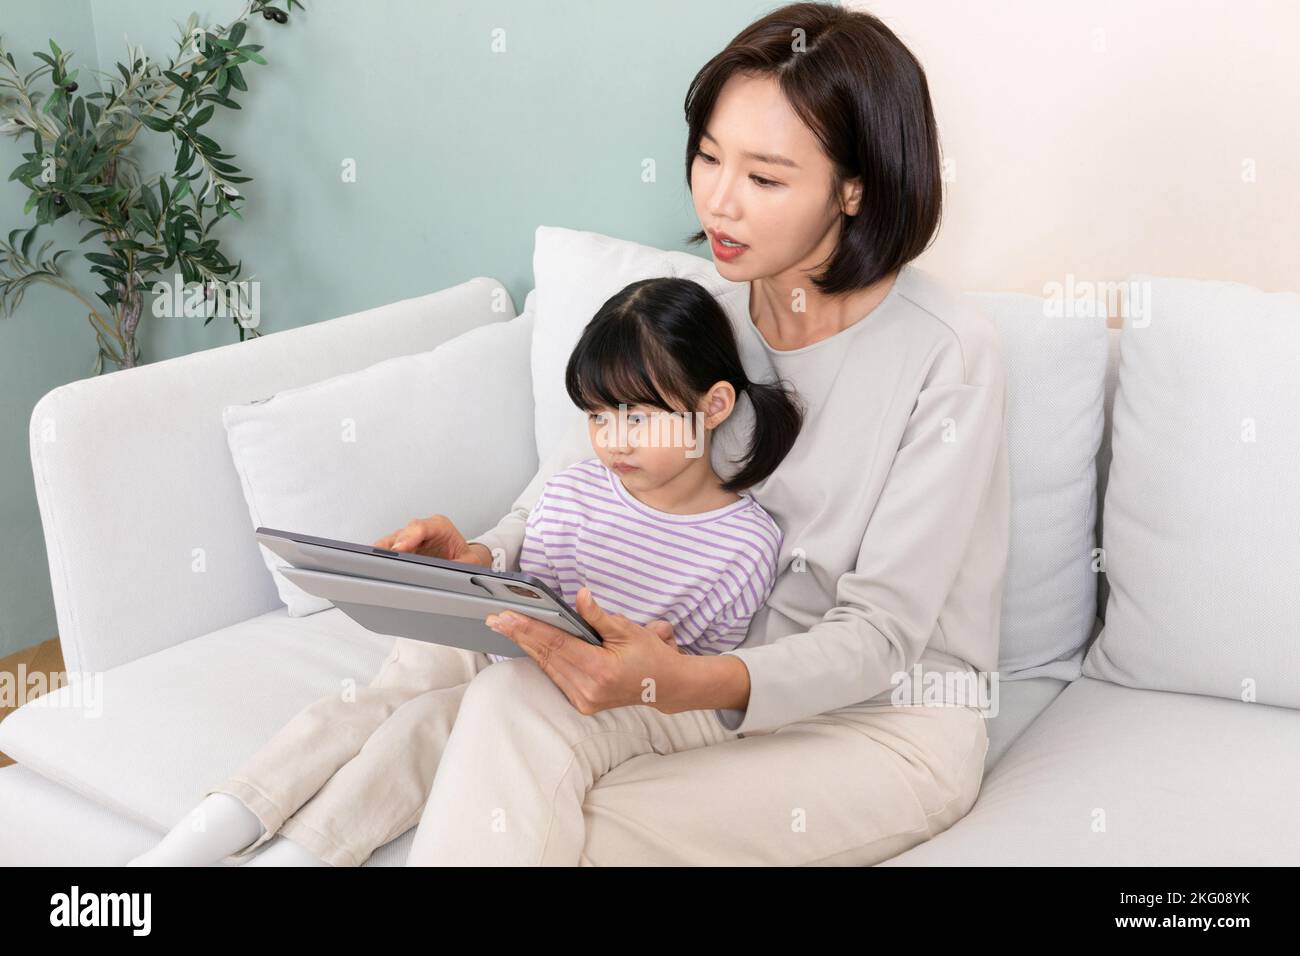 Enfant et maman coréens utilisant une tablette, concept de consultations médicales en ligne Banque D'Images